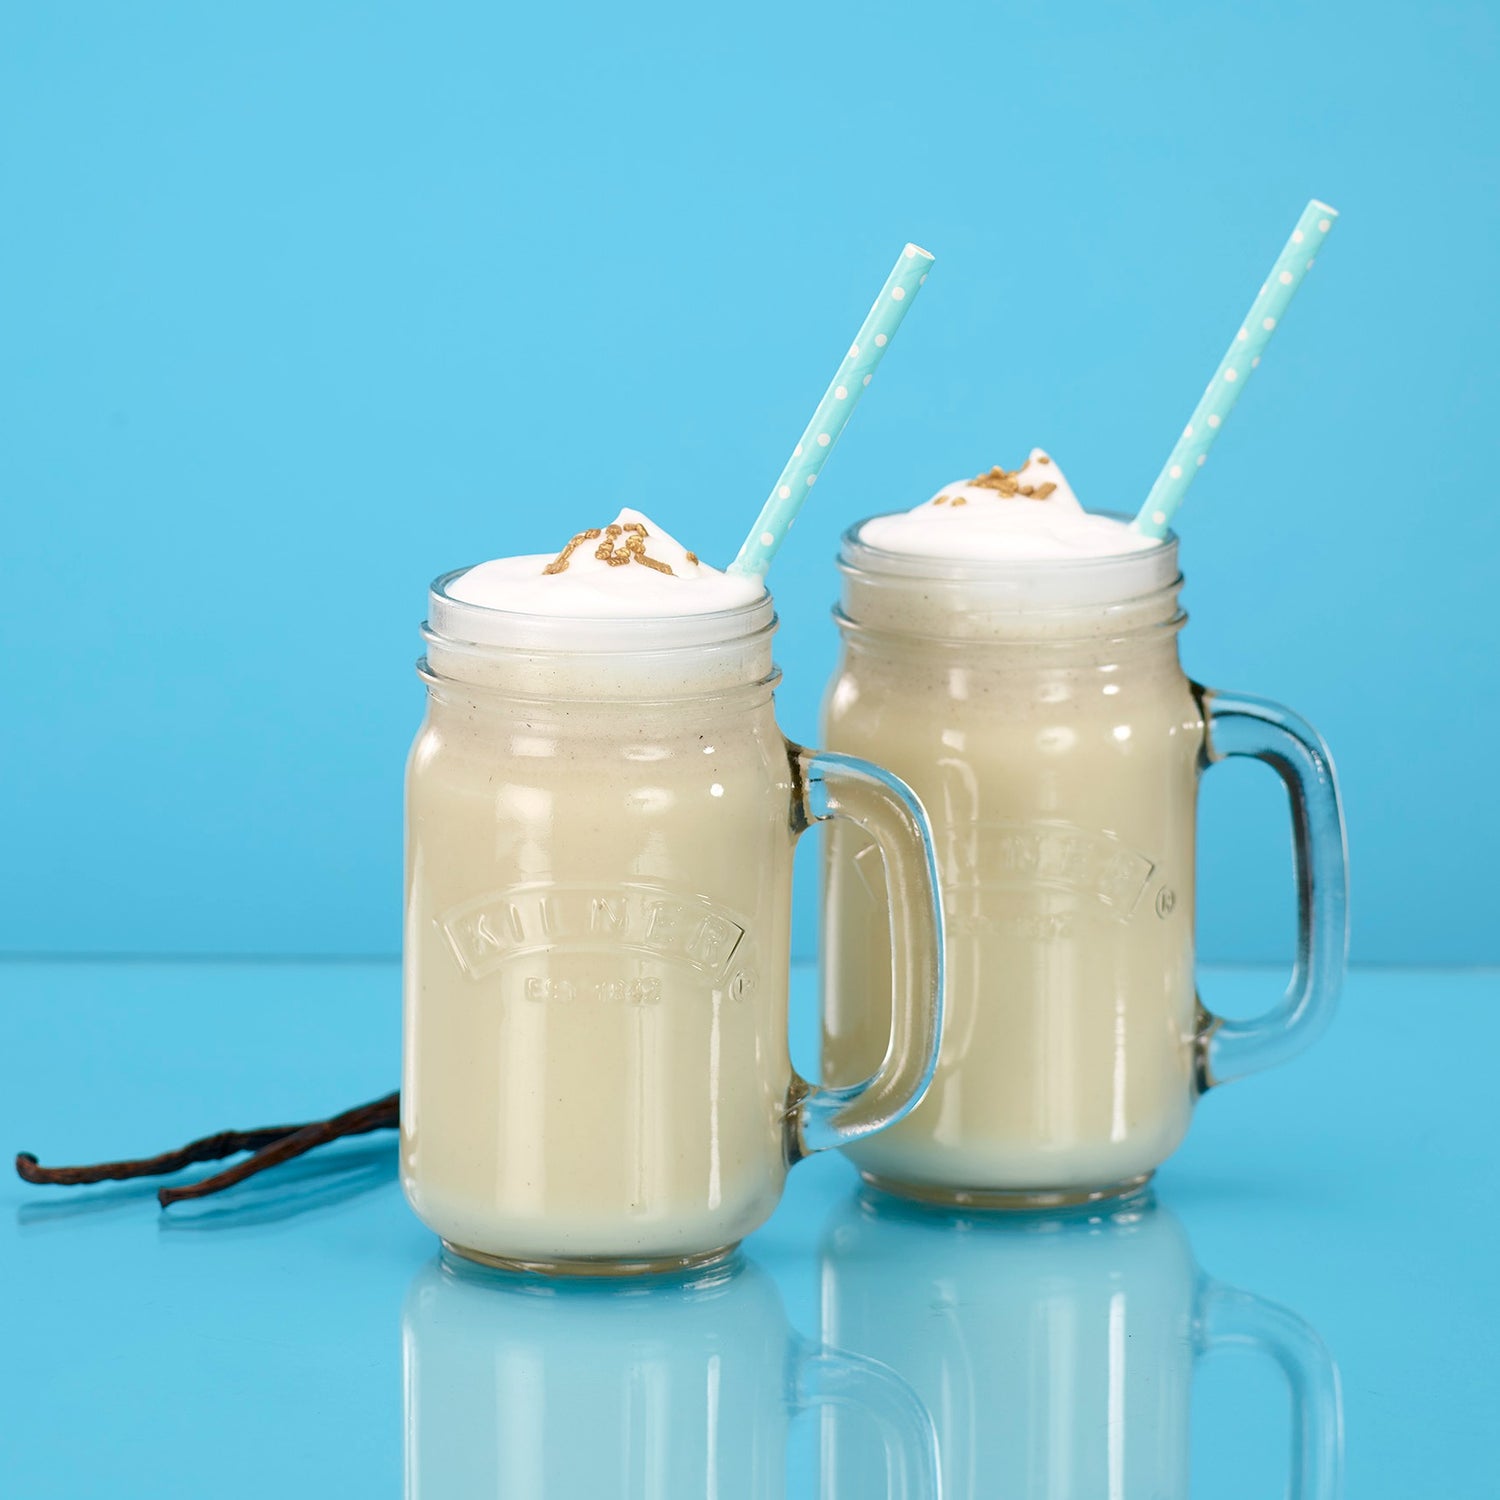 Whey 100 Vanilla Milkshake (1 kg) - Nordic Nutrition